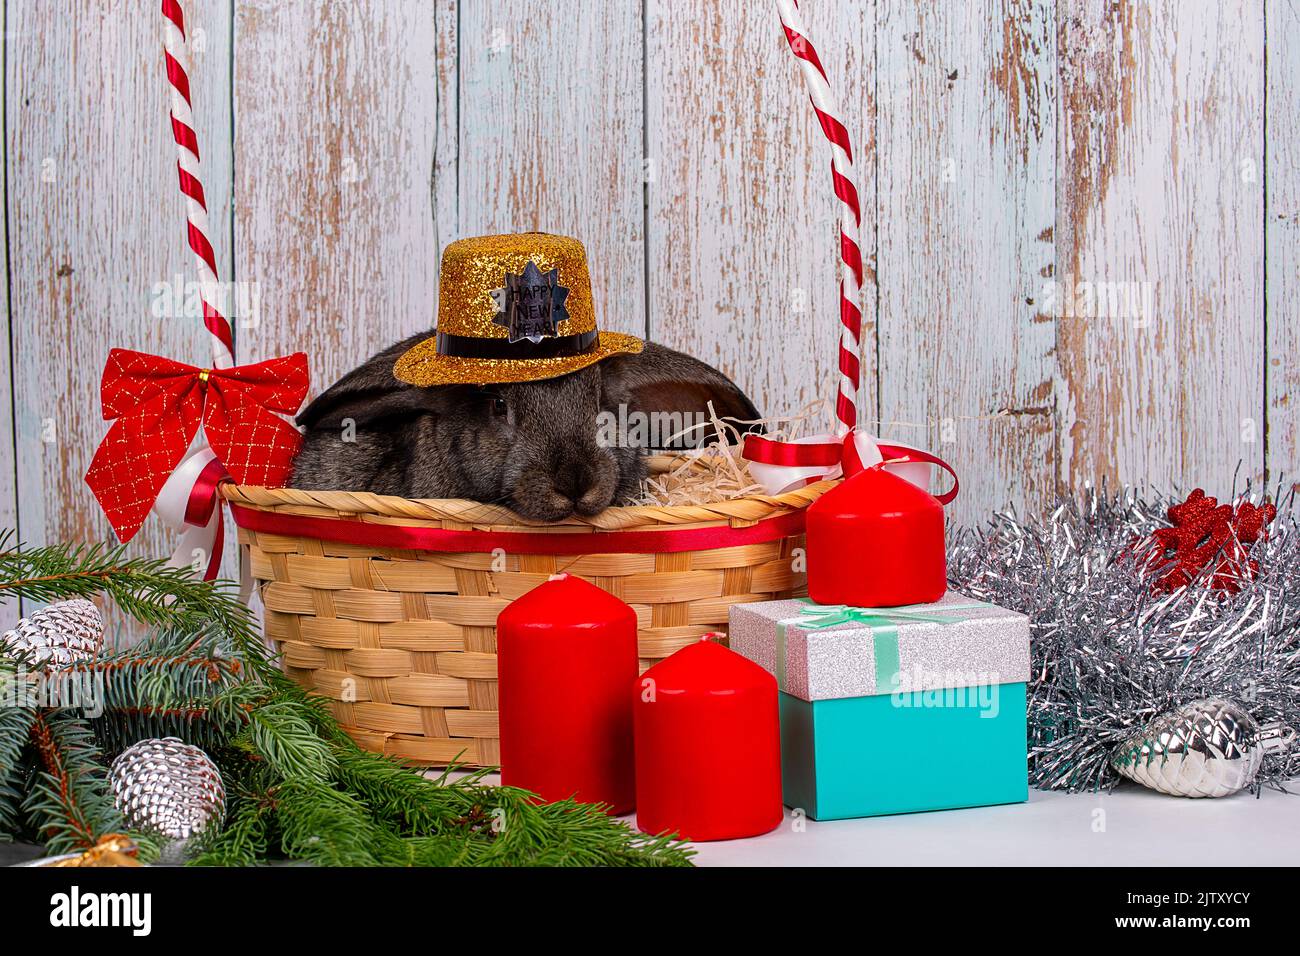 Un lapin noir du nouvel an dans un chapeau doré est placé dans un panier parmi les branches d'un sapin, les cadeaux et décorations du nouvel an, un symbole de l'année 20 Banque D'Images